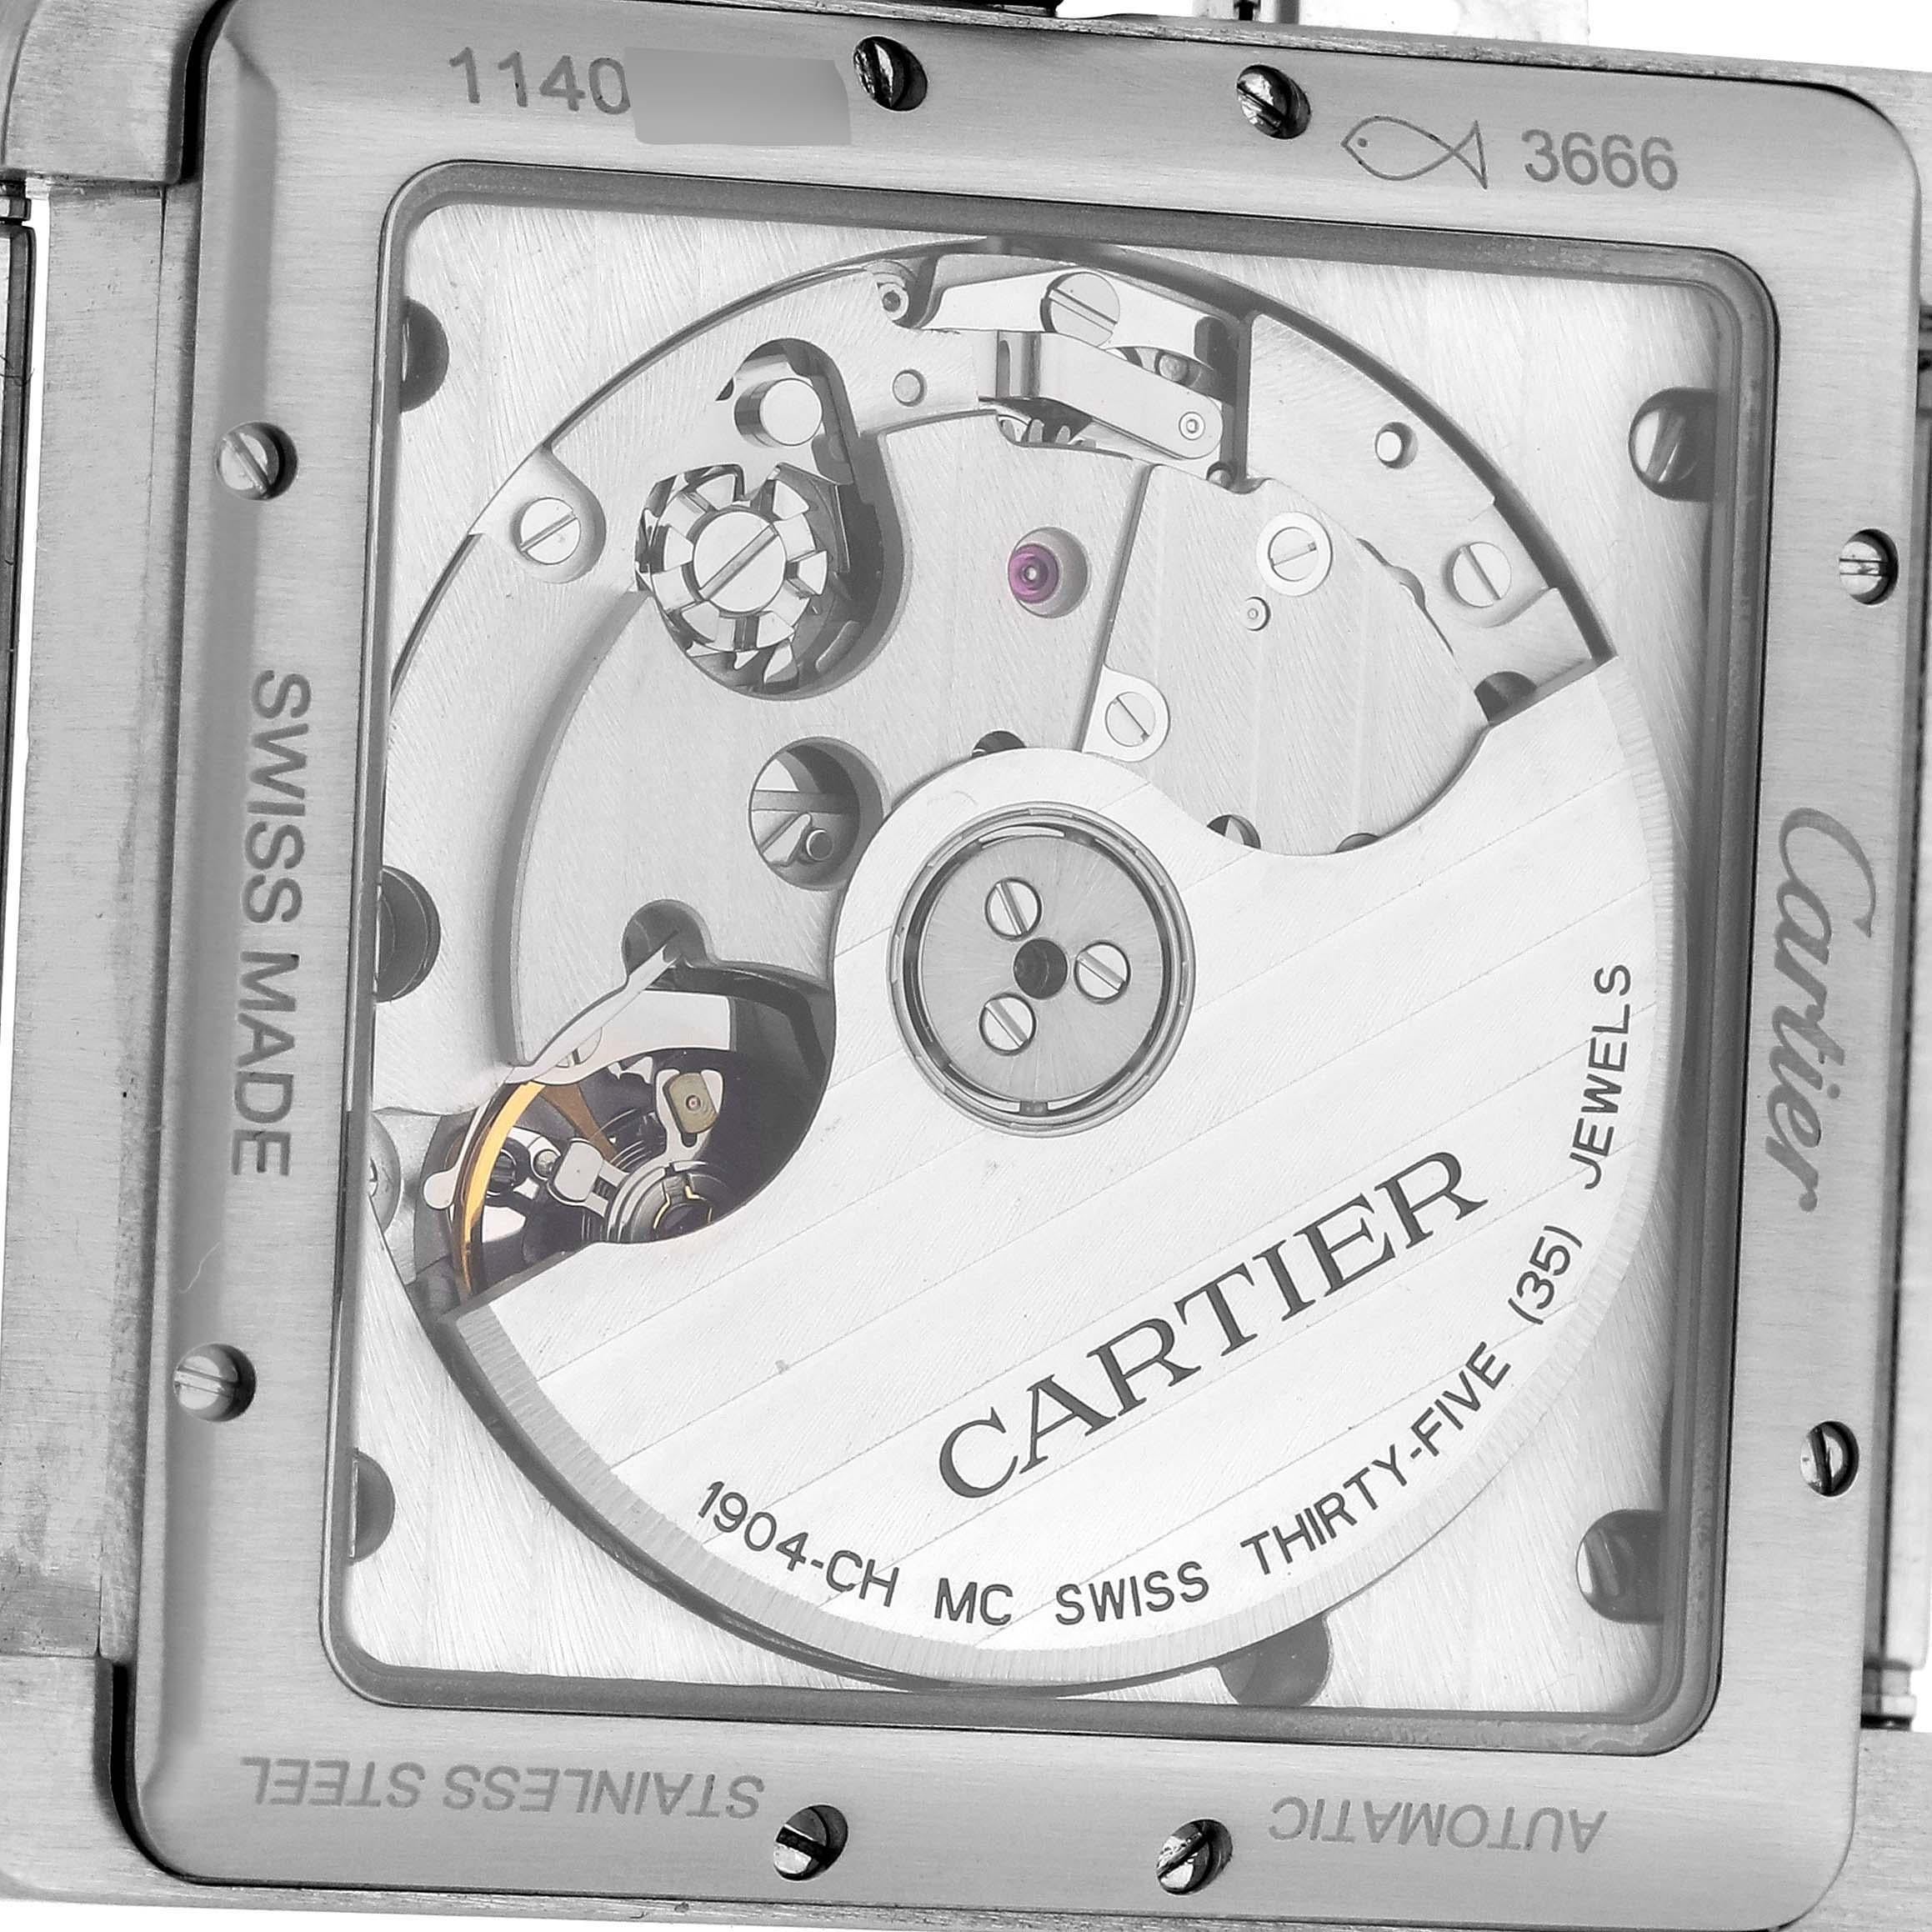 Cartier Tank MC Silver Dial Automatic Chronograph Mens Watch W5330007 Papers. Mouvement chronographe automatique à remontage automatique. Boîtier en acier inoxydable brossé à trois corps 34,3 x 44,0 mm. Couronne octogonale protégée sertie du